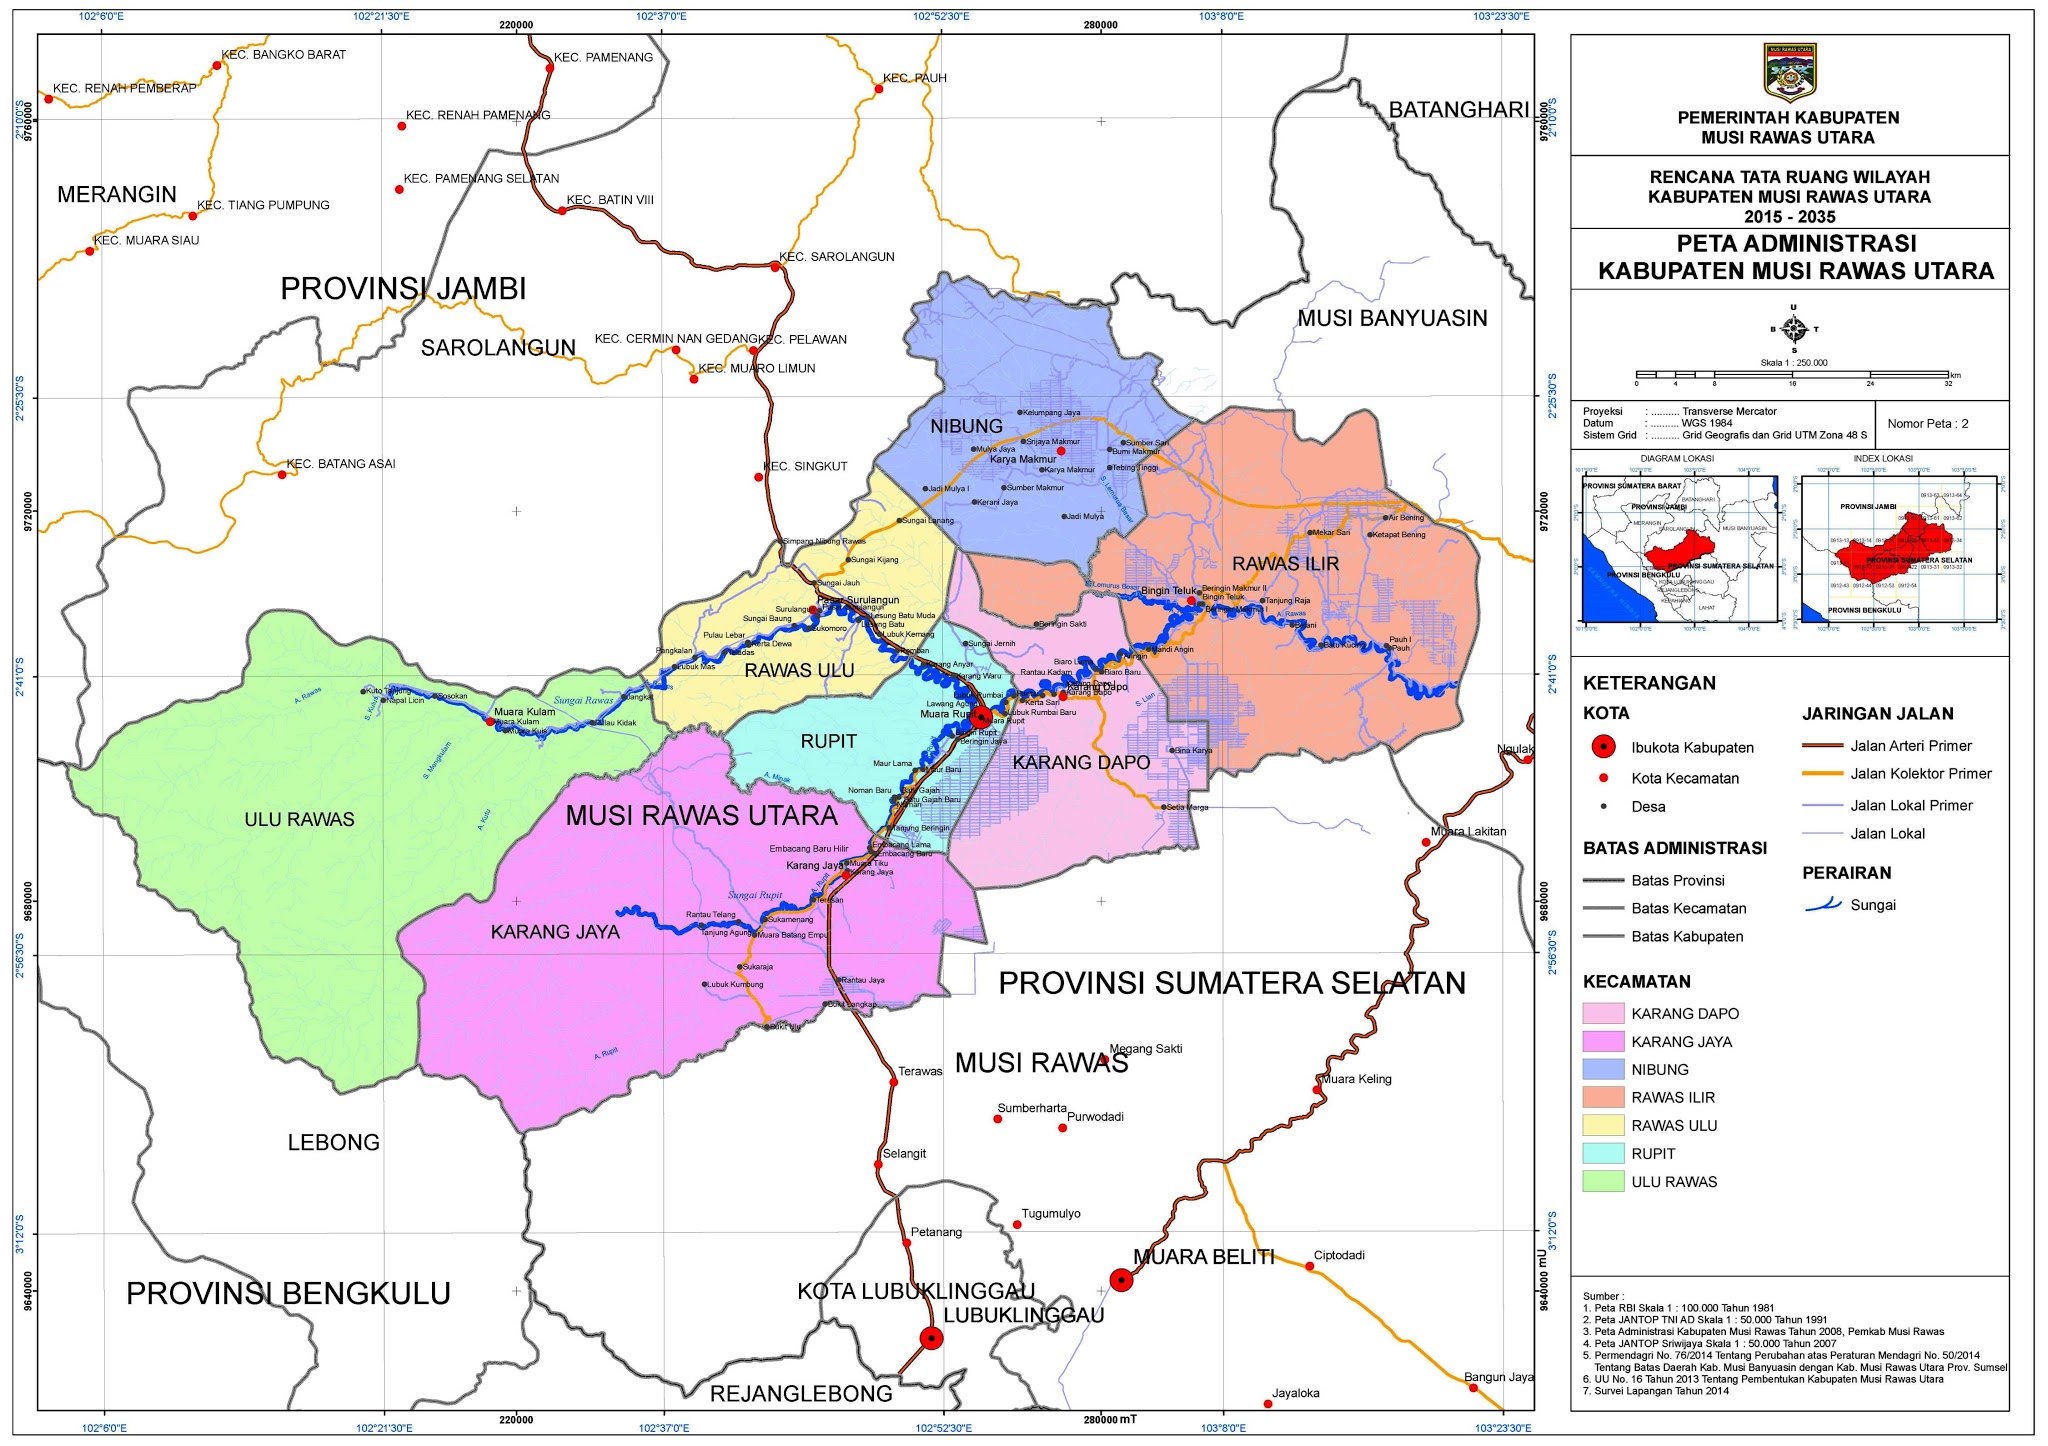 Peta Kota Peta Kabupaten Musi Rawas Utara